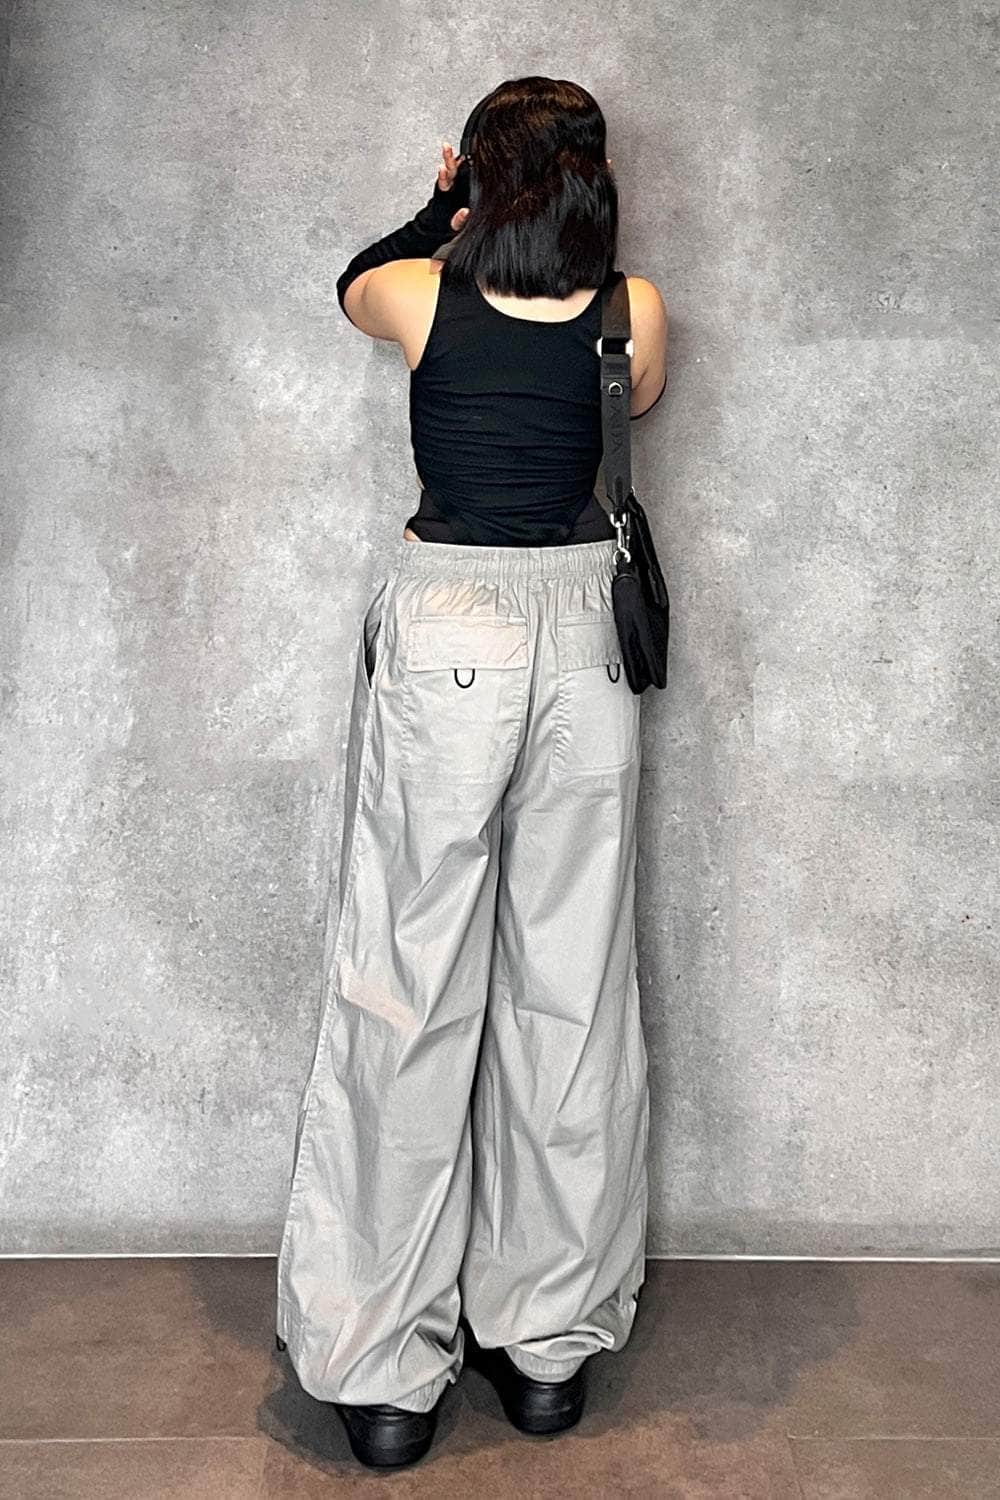 Parachute pants - Cool Grey Parachute Pants 2.0 for women